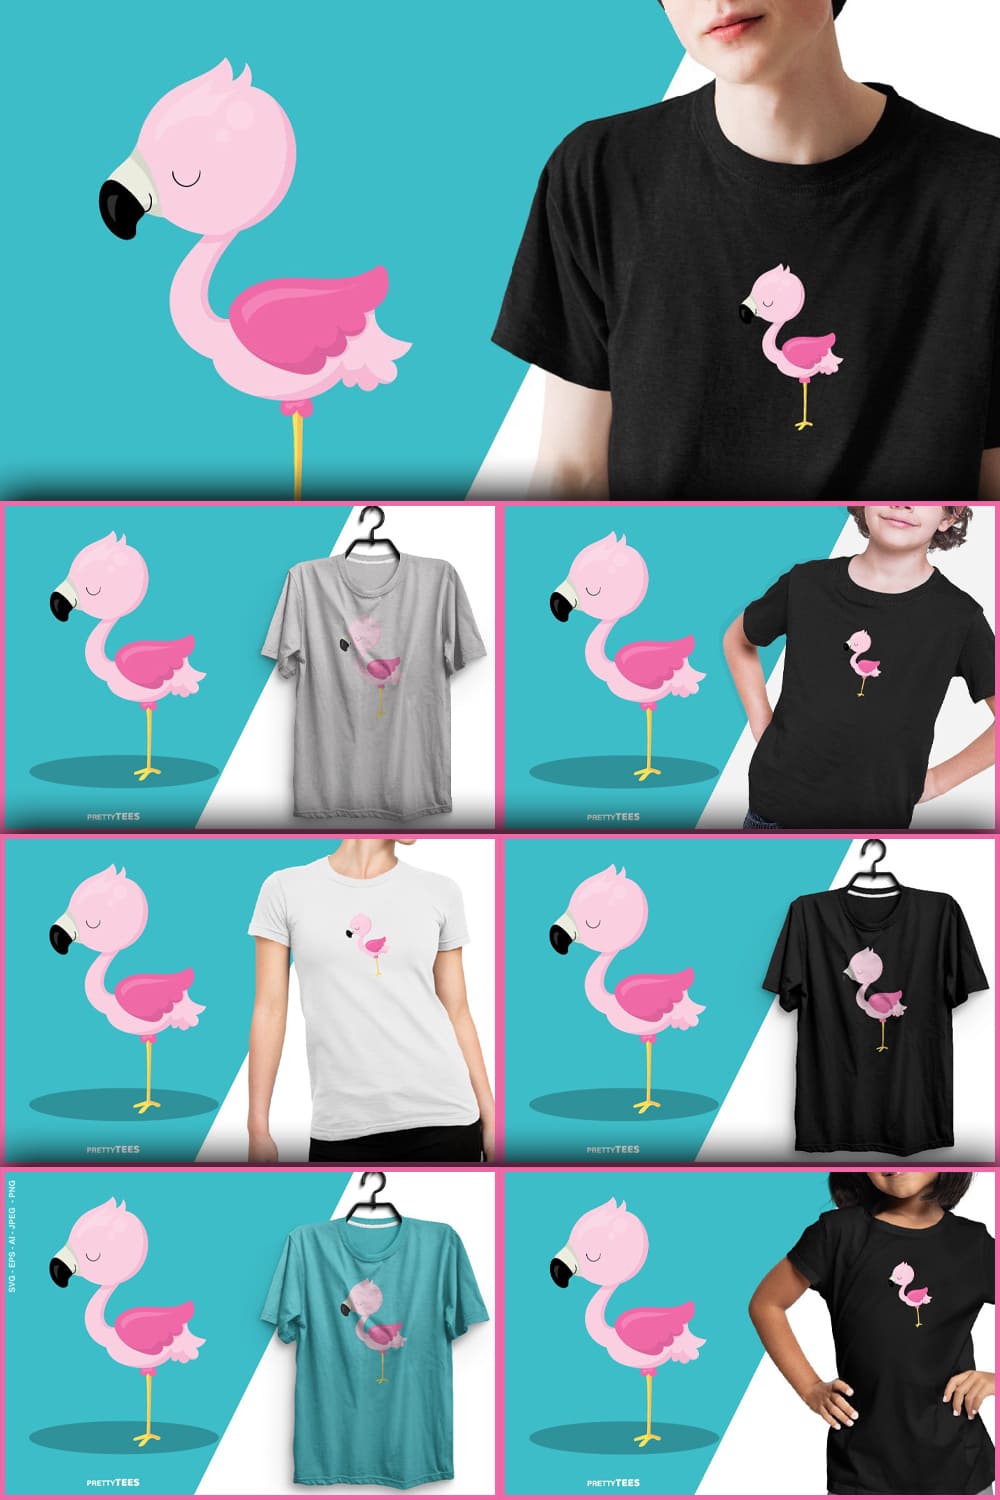 Flamingo t-shirt design flamingo sublimation t-shirt, picture for Pinterest 1000x1500.